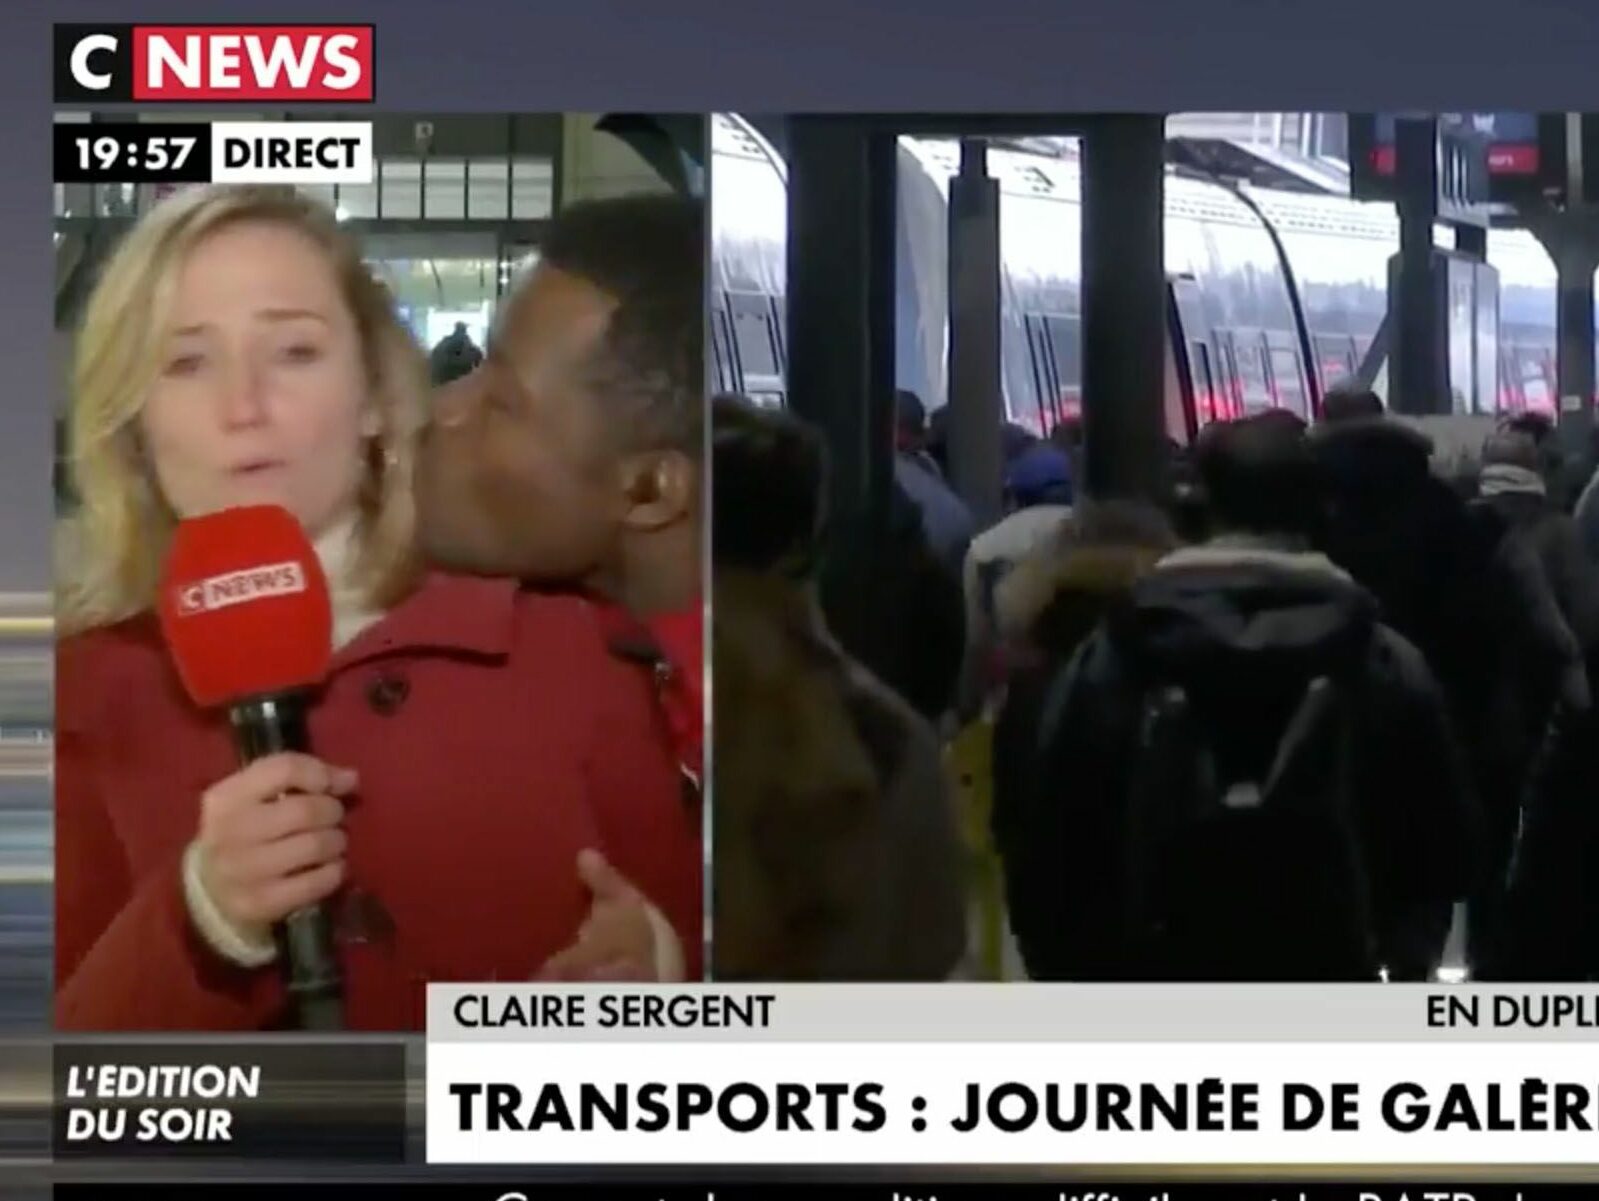 CNews : Embrassée de force en plein direct, une journaliste réagit